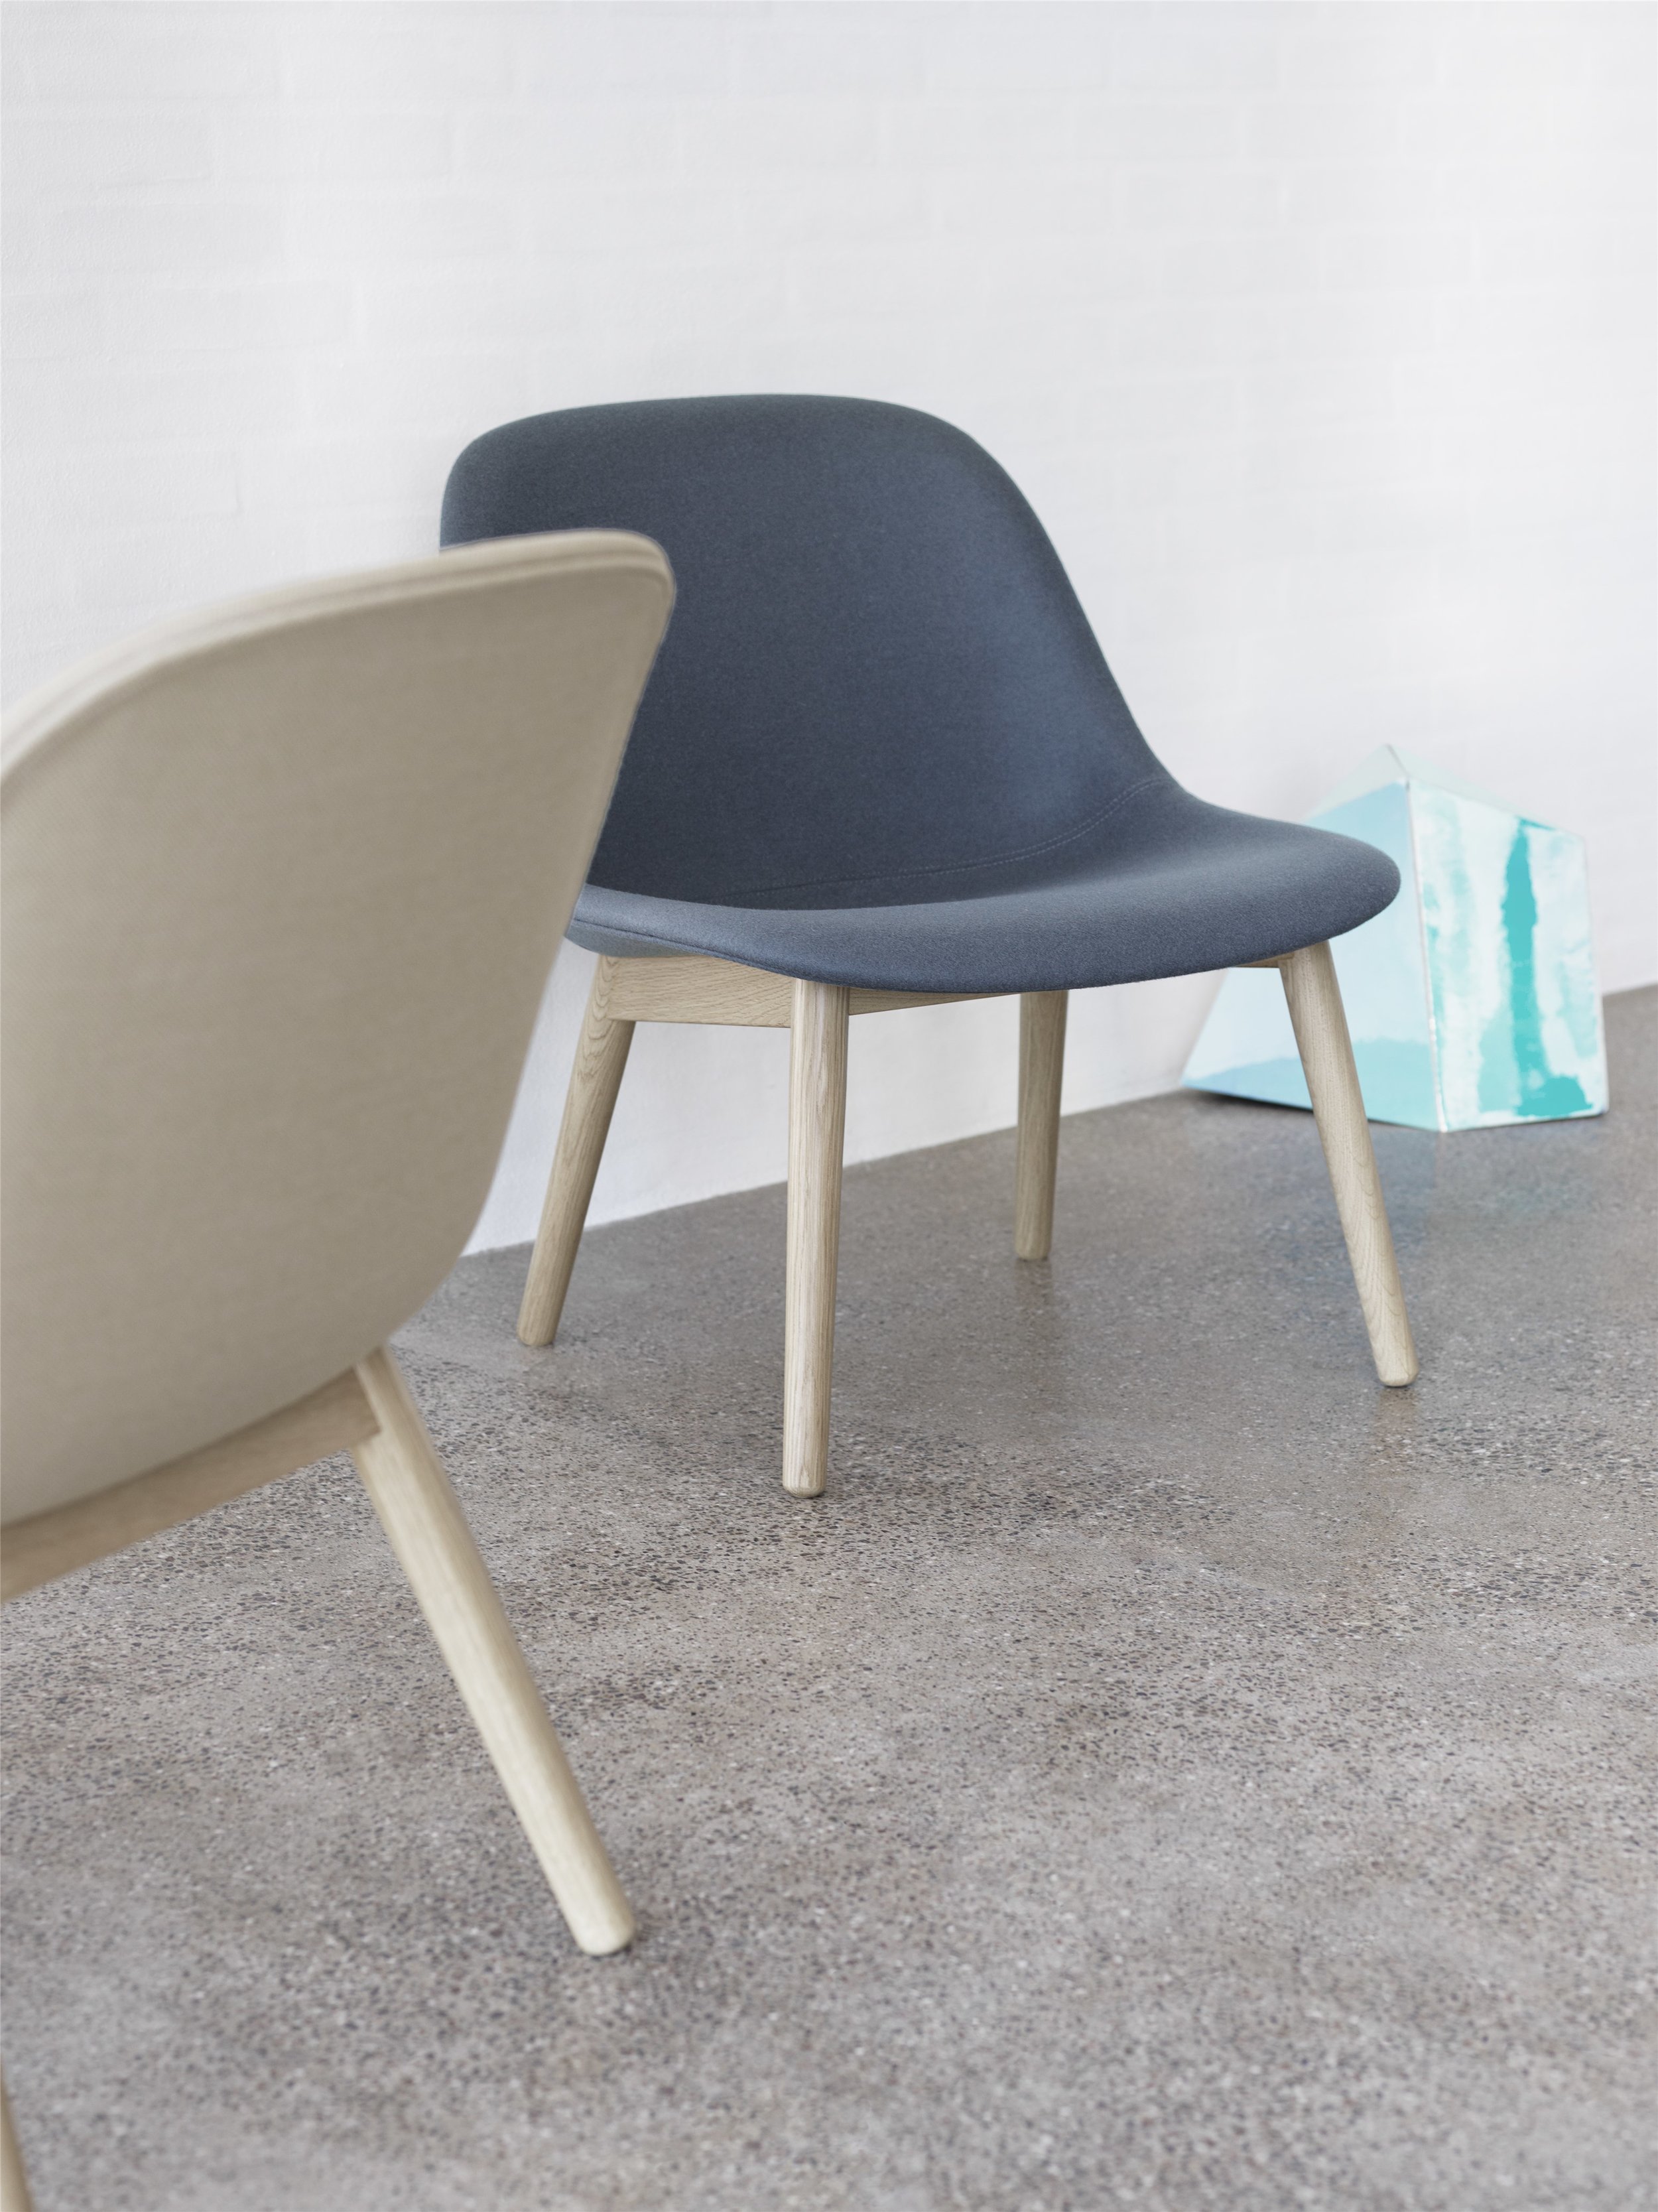 Fiber lounge chair Muuto, modern furniture, scandinavian design, interiors 1.jpg